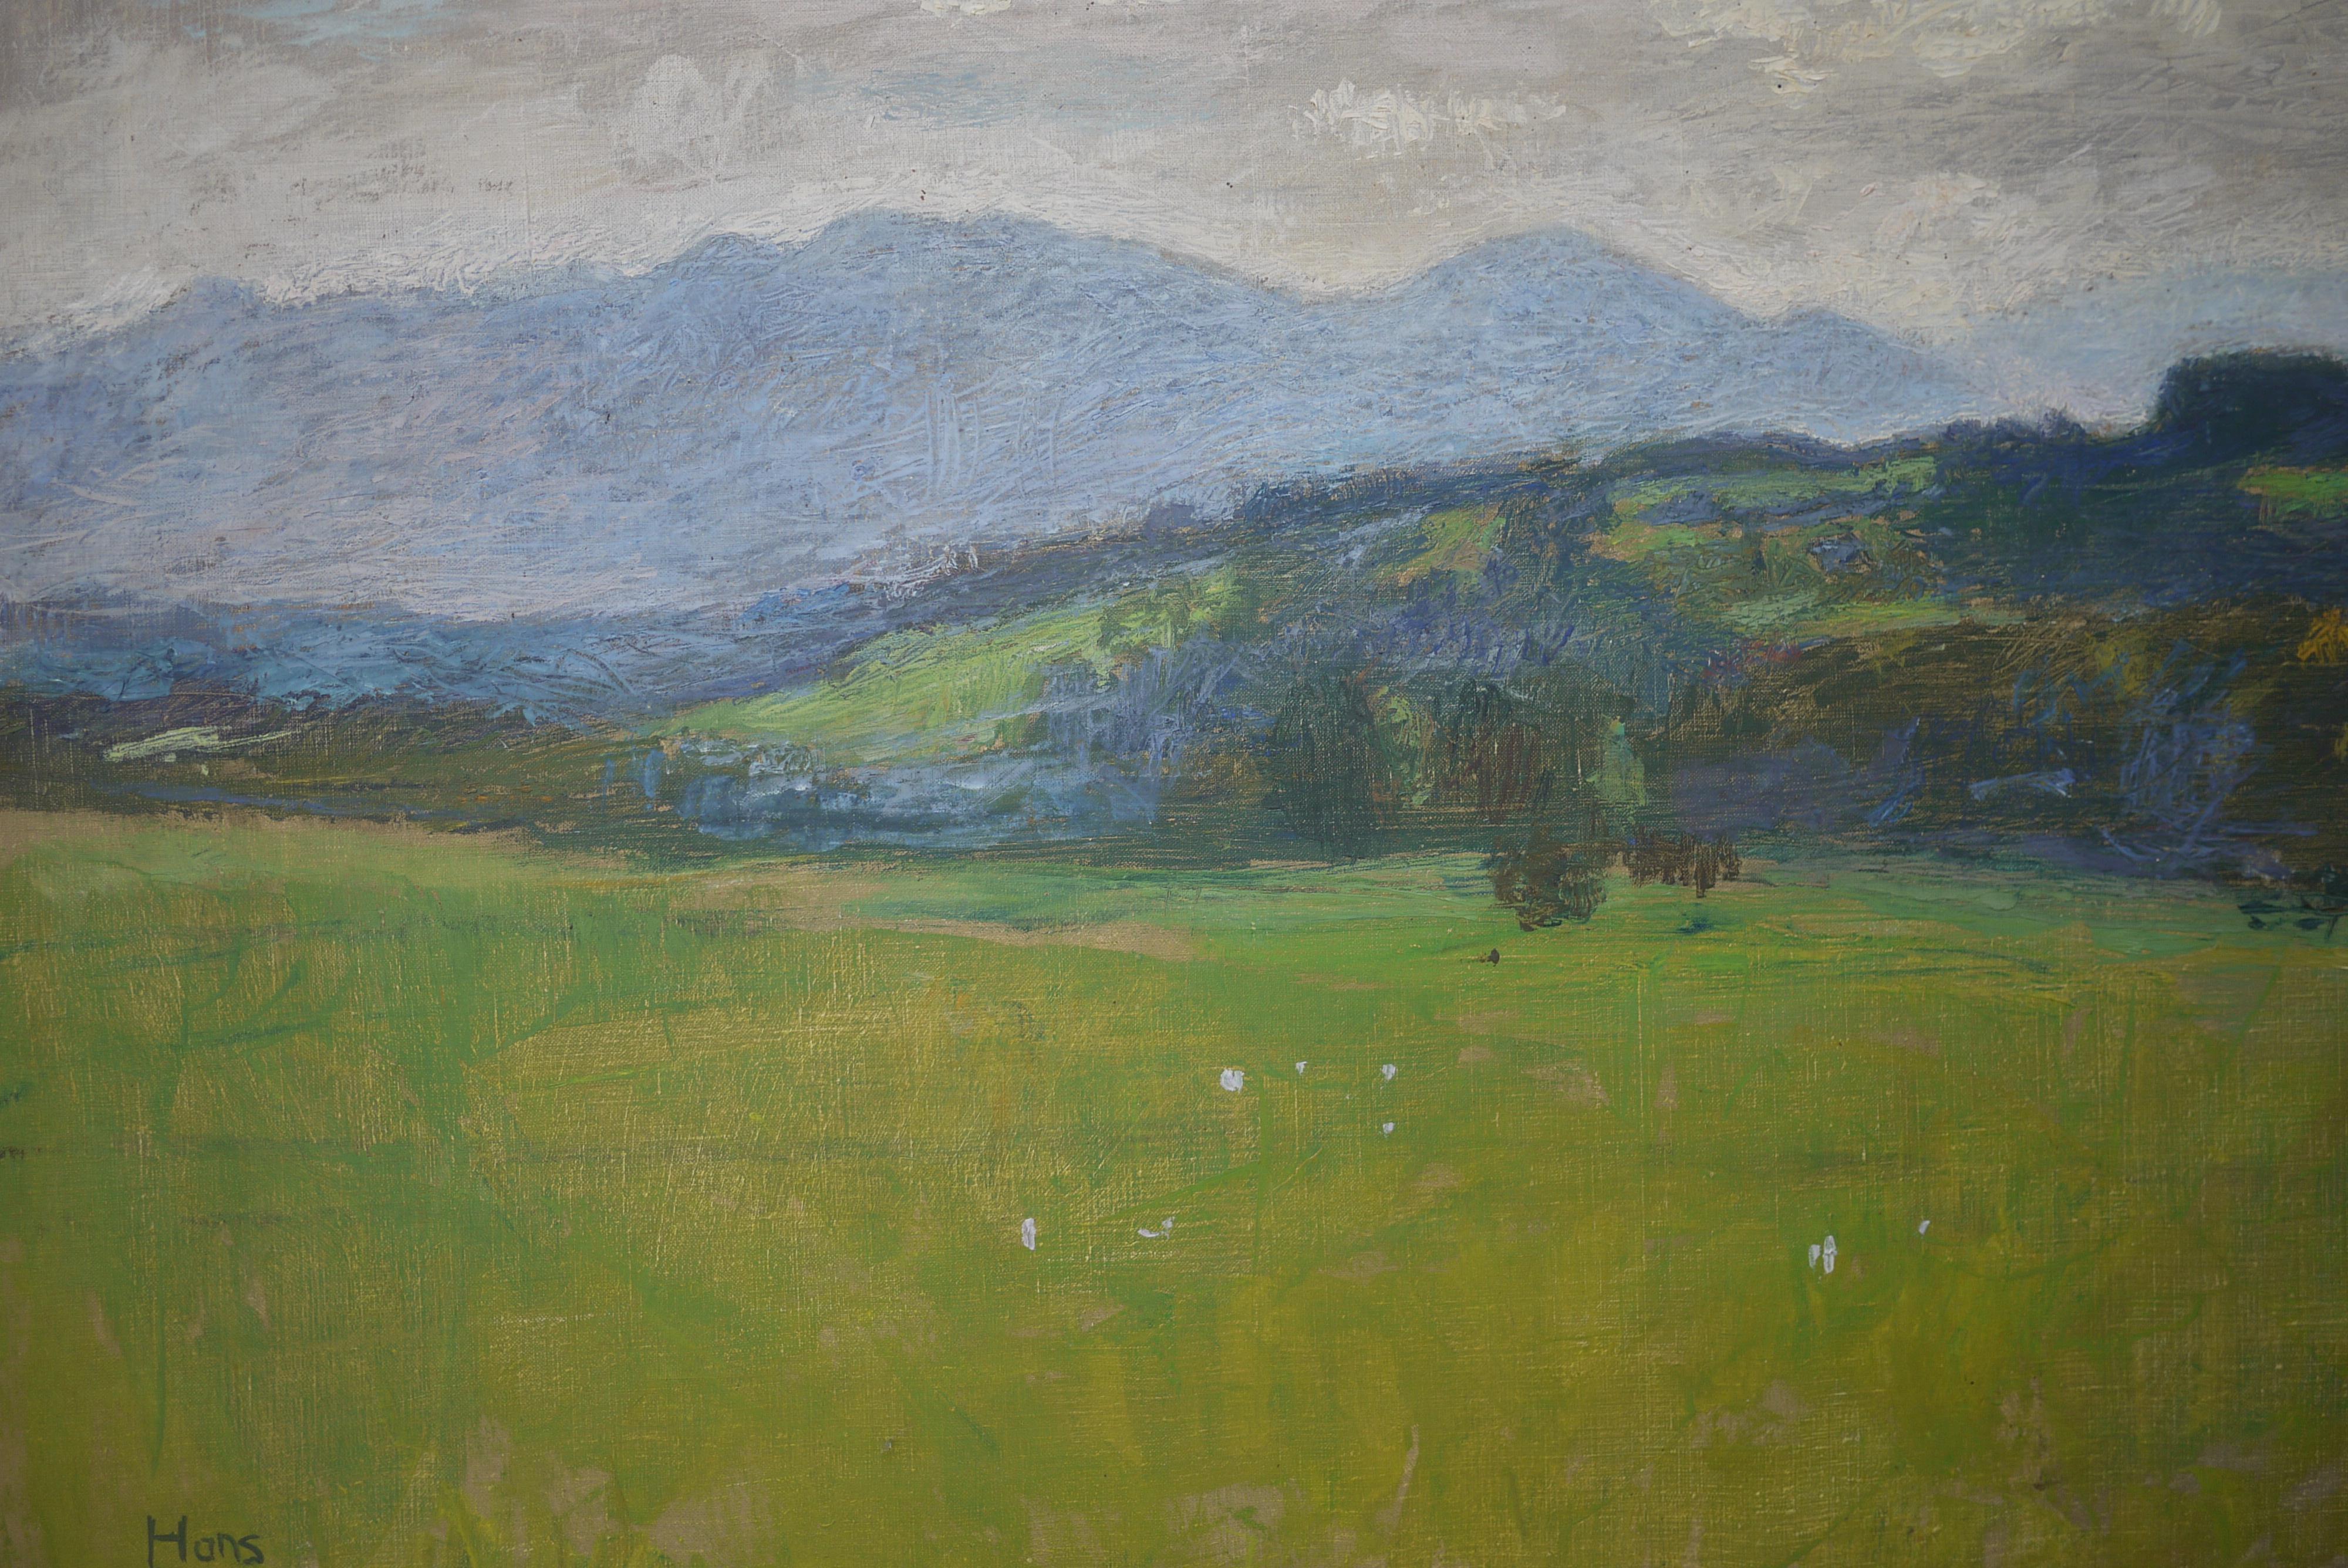 Landschaftsgemälde Hügel, Hans Blum Öl auf Leinwand, 1937 (Deutsch)